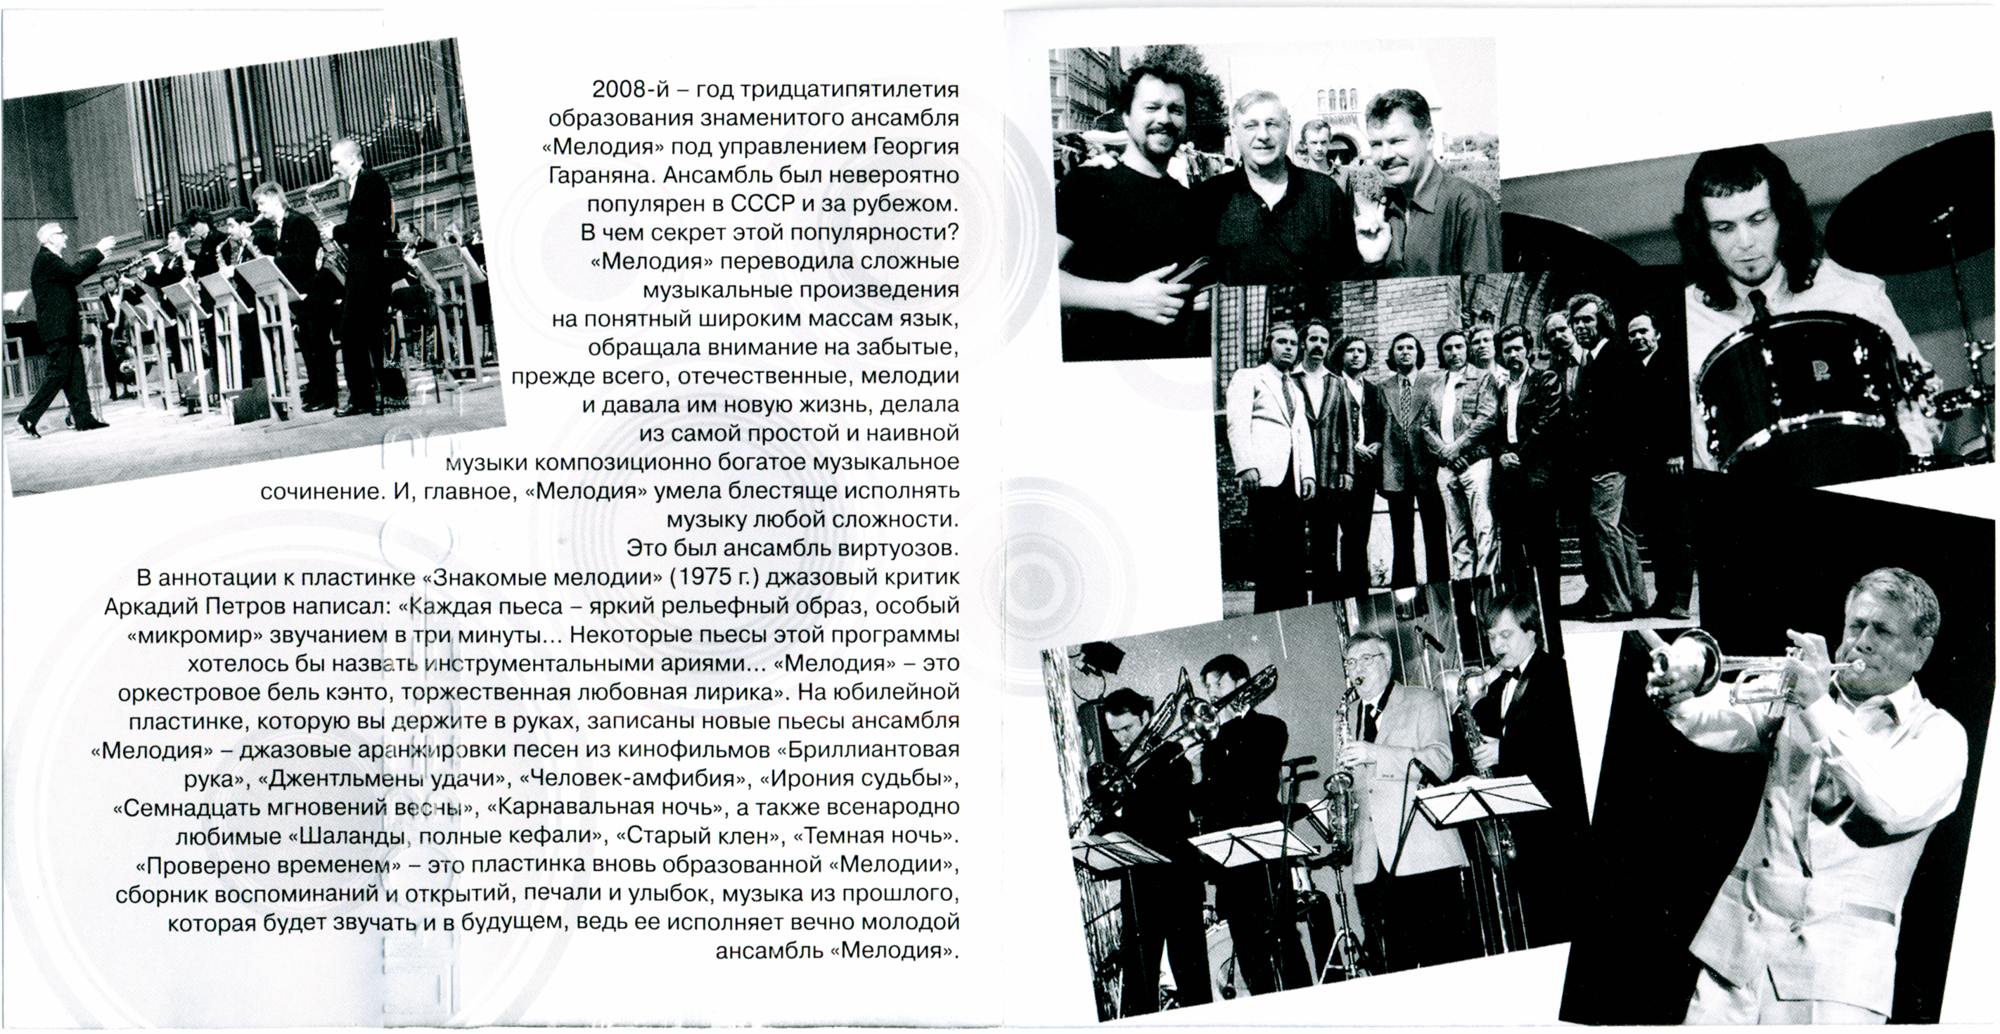 Георгий Гаранян и ансамбль "Мелодия". Проверено временем